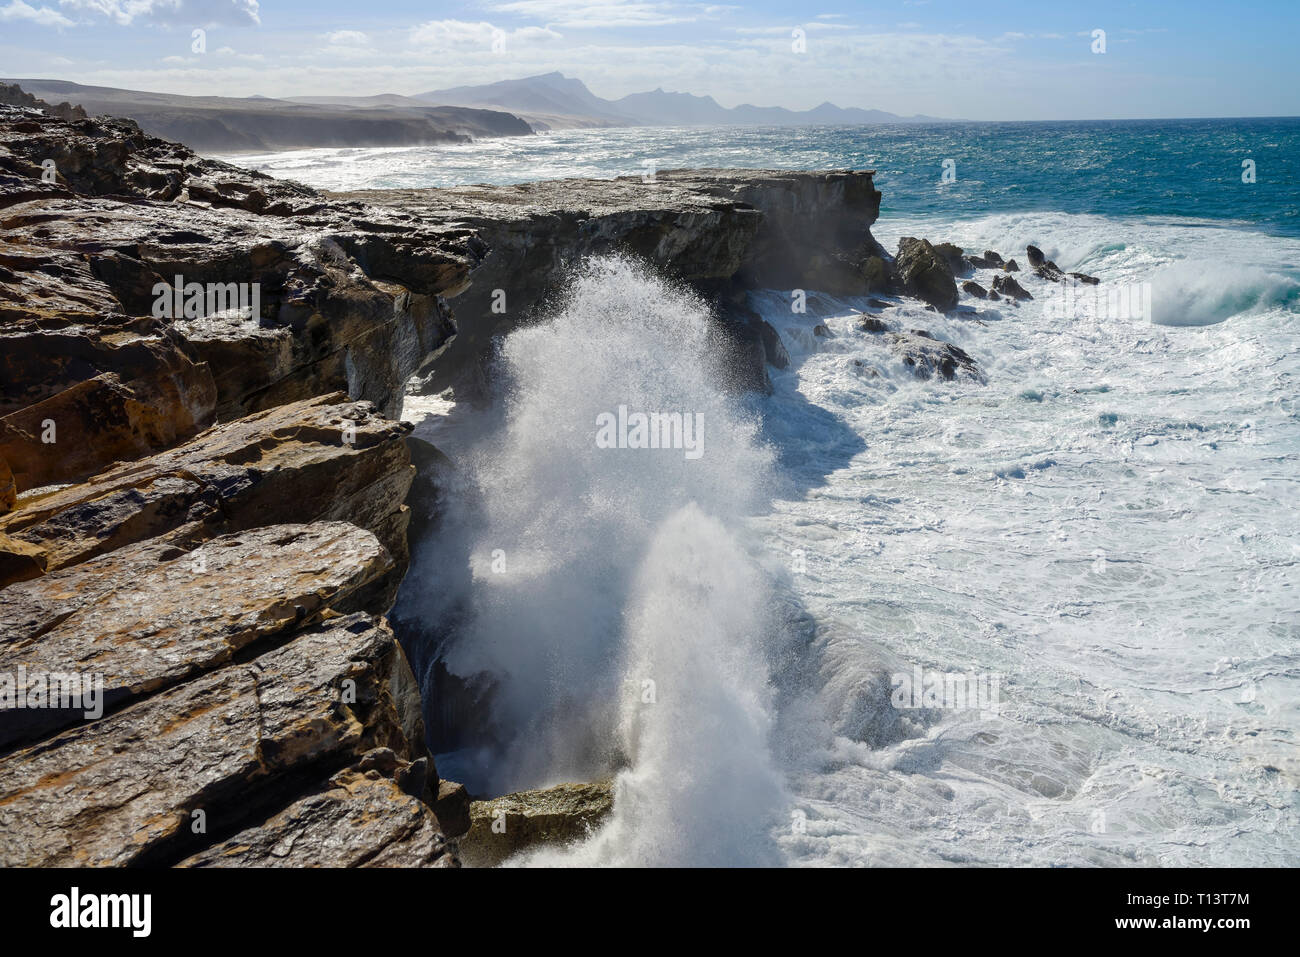 España, Islas Canarias, Fuerteventura, costa rocosa en Punta Guadalupe cerca de El Cotillo Foto de stock